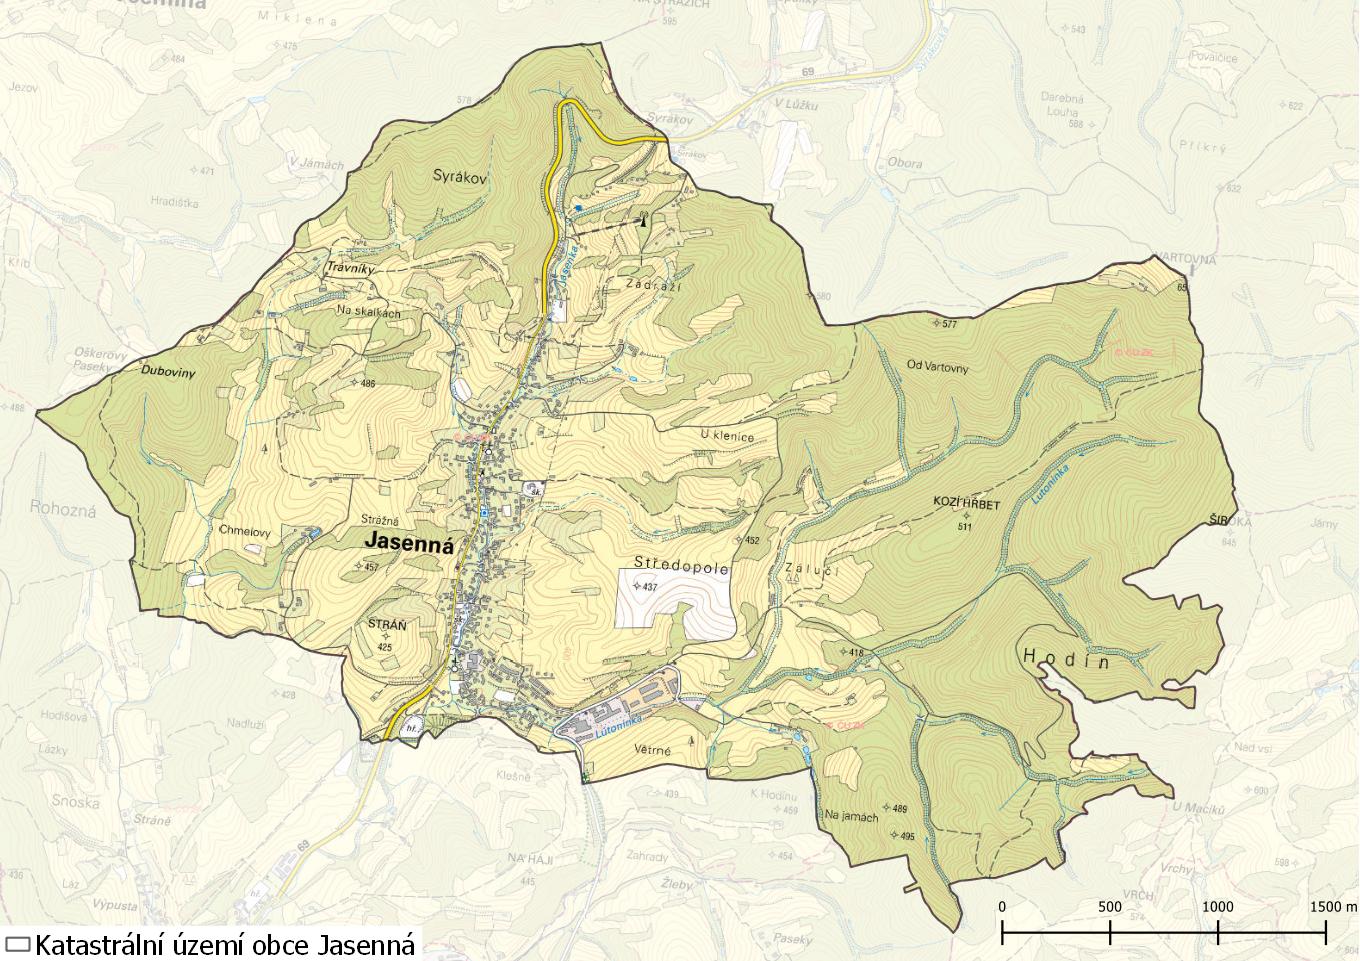 Katastrální území obce Jasenná